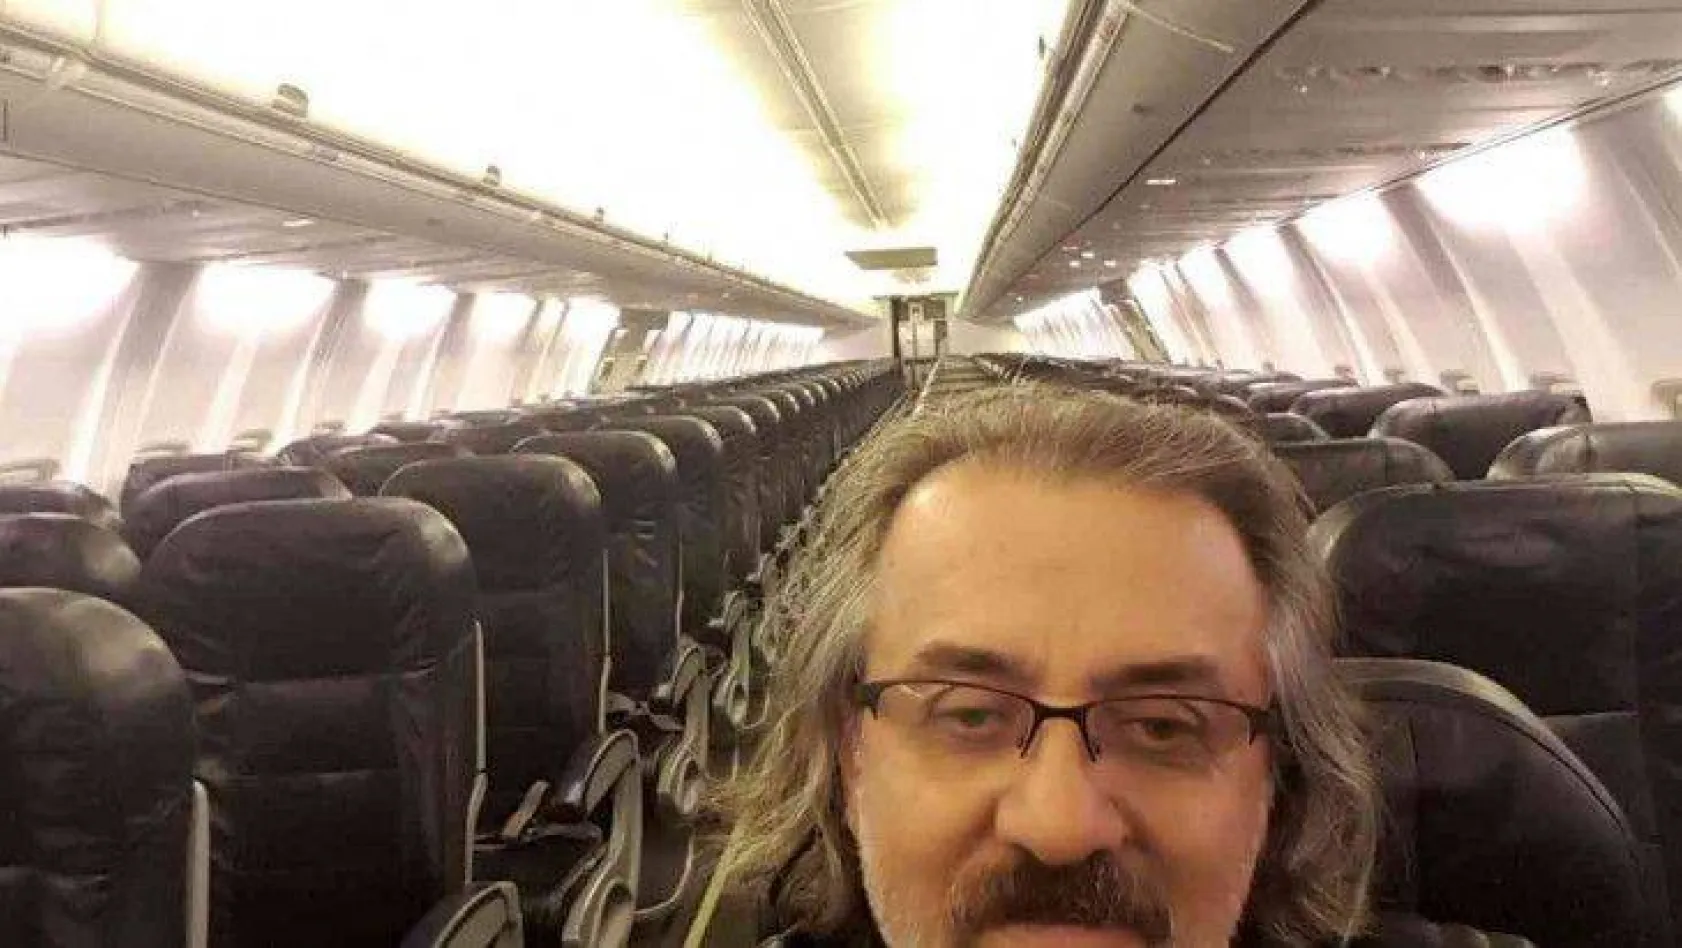 189 kişilik yolcu uçağında tek başına seyahat etti